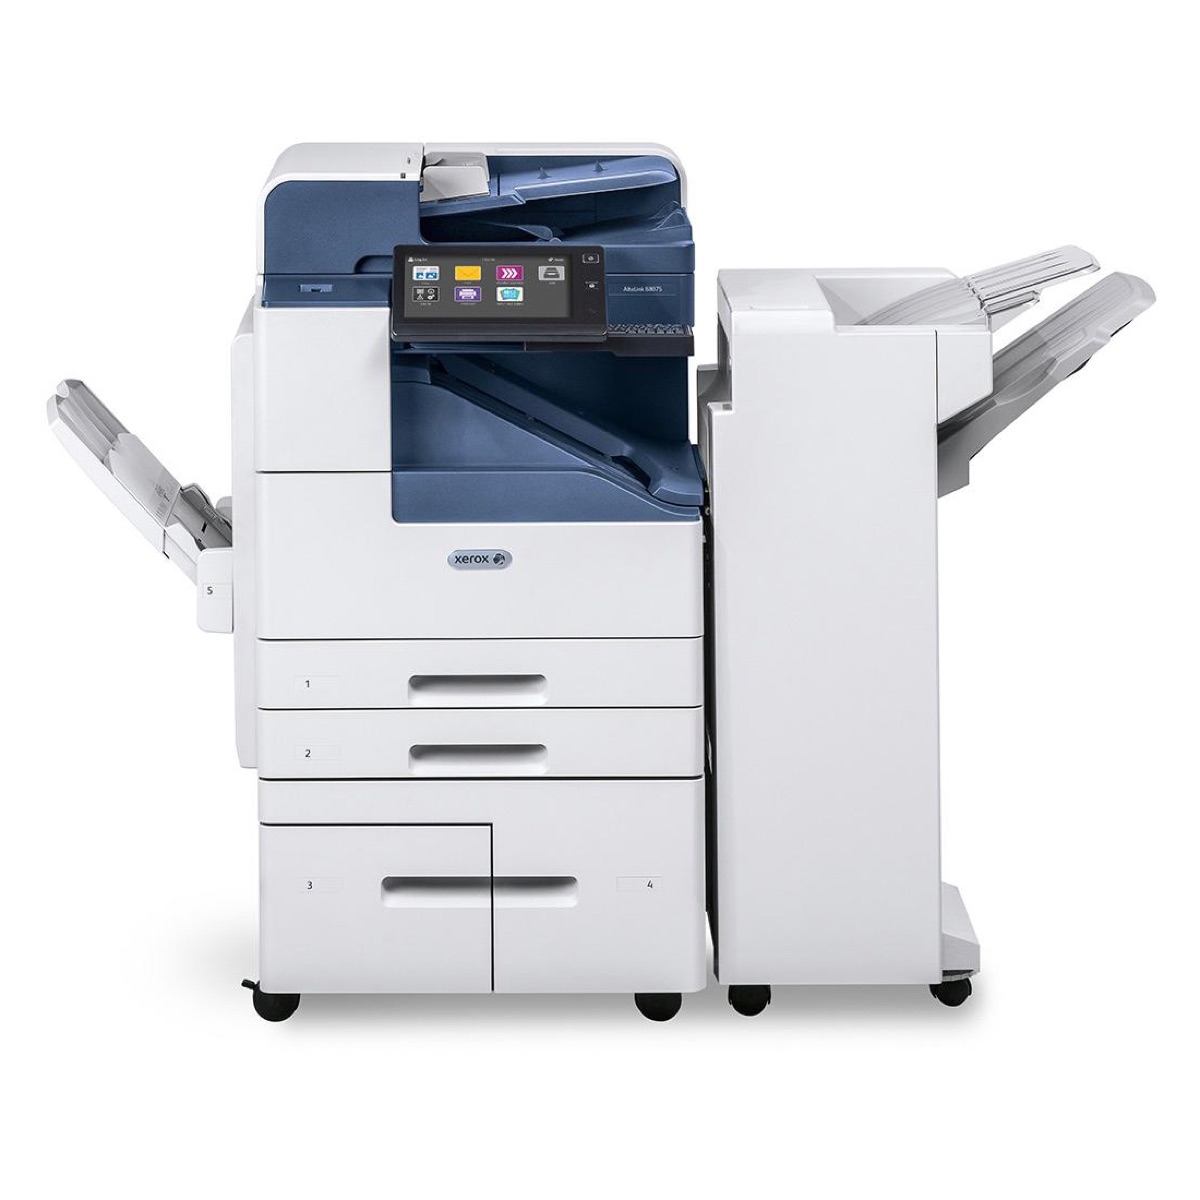 Xerox Copiers:  The Xerox AltaLink B8055/H2 Copier